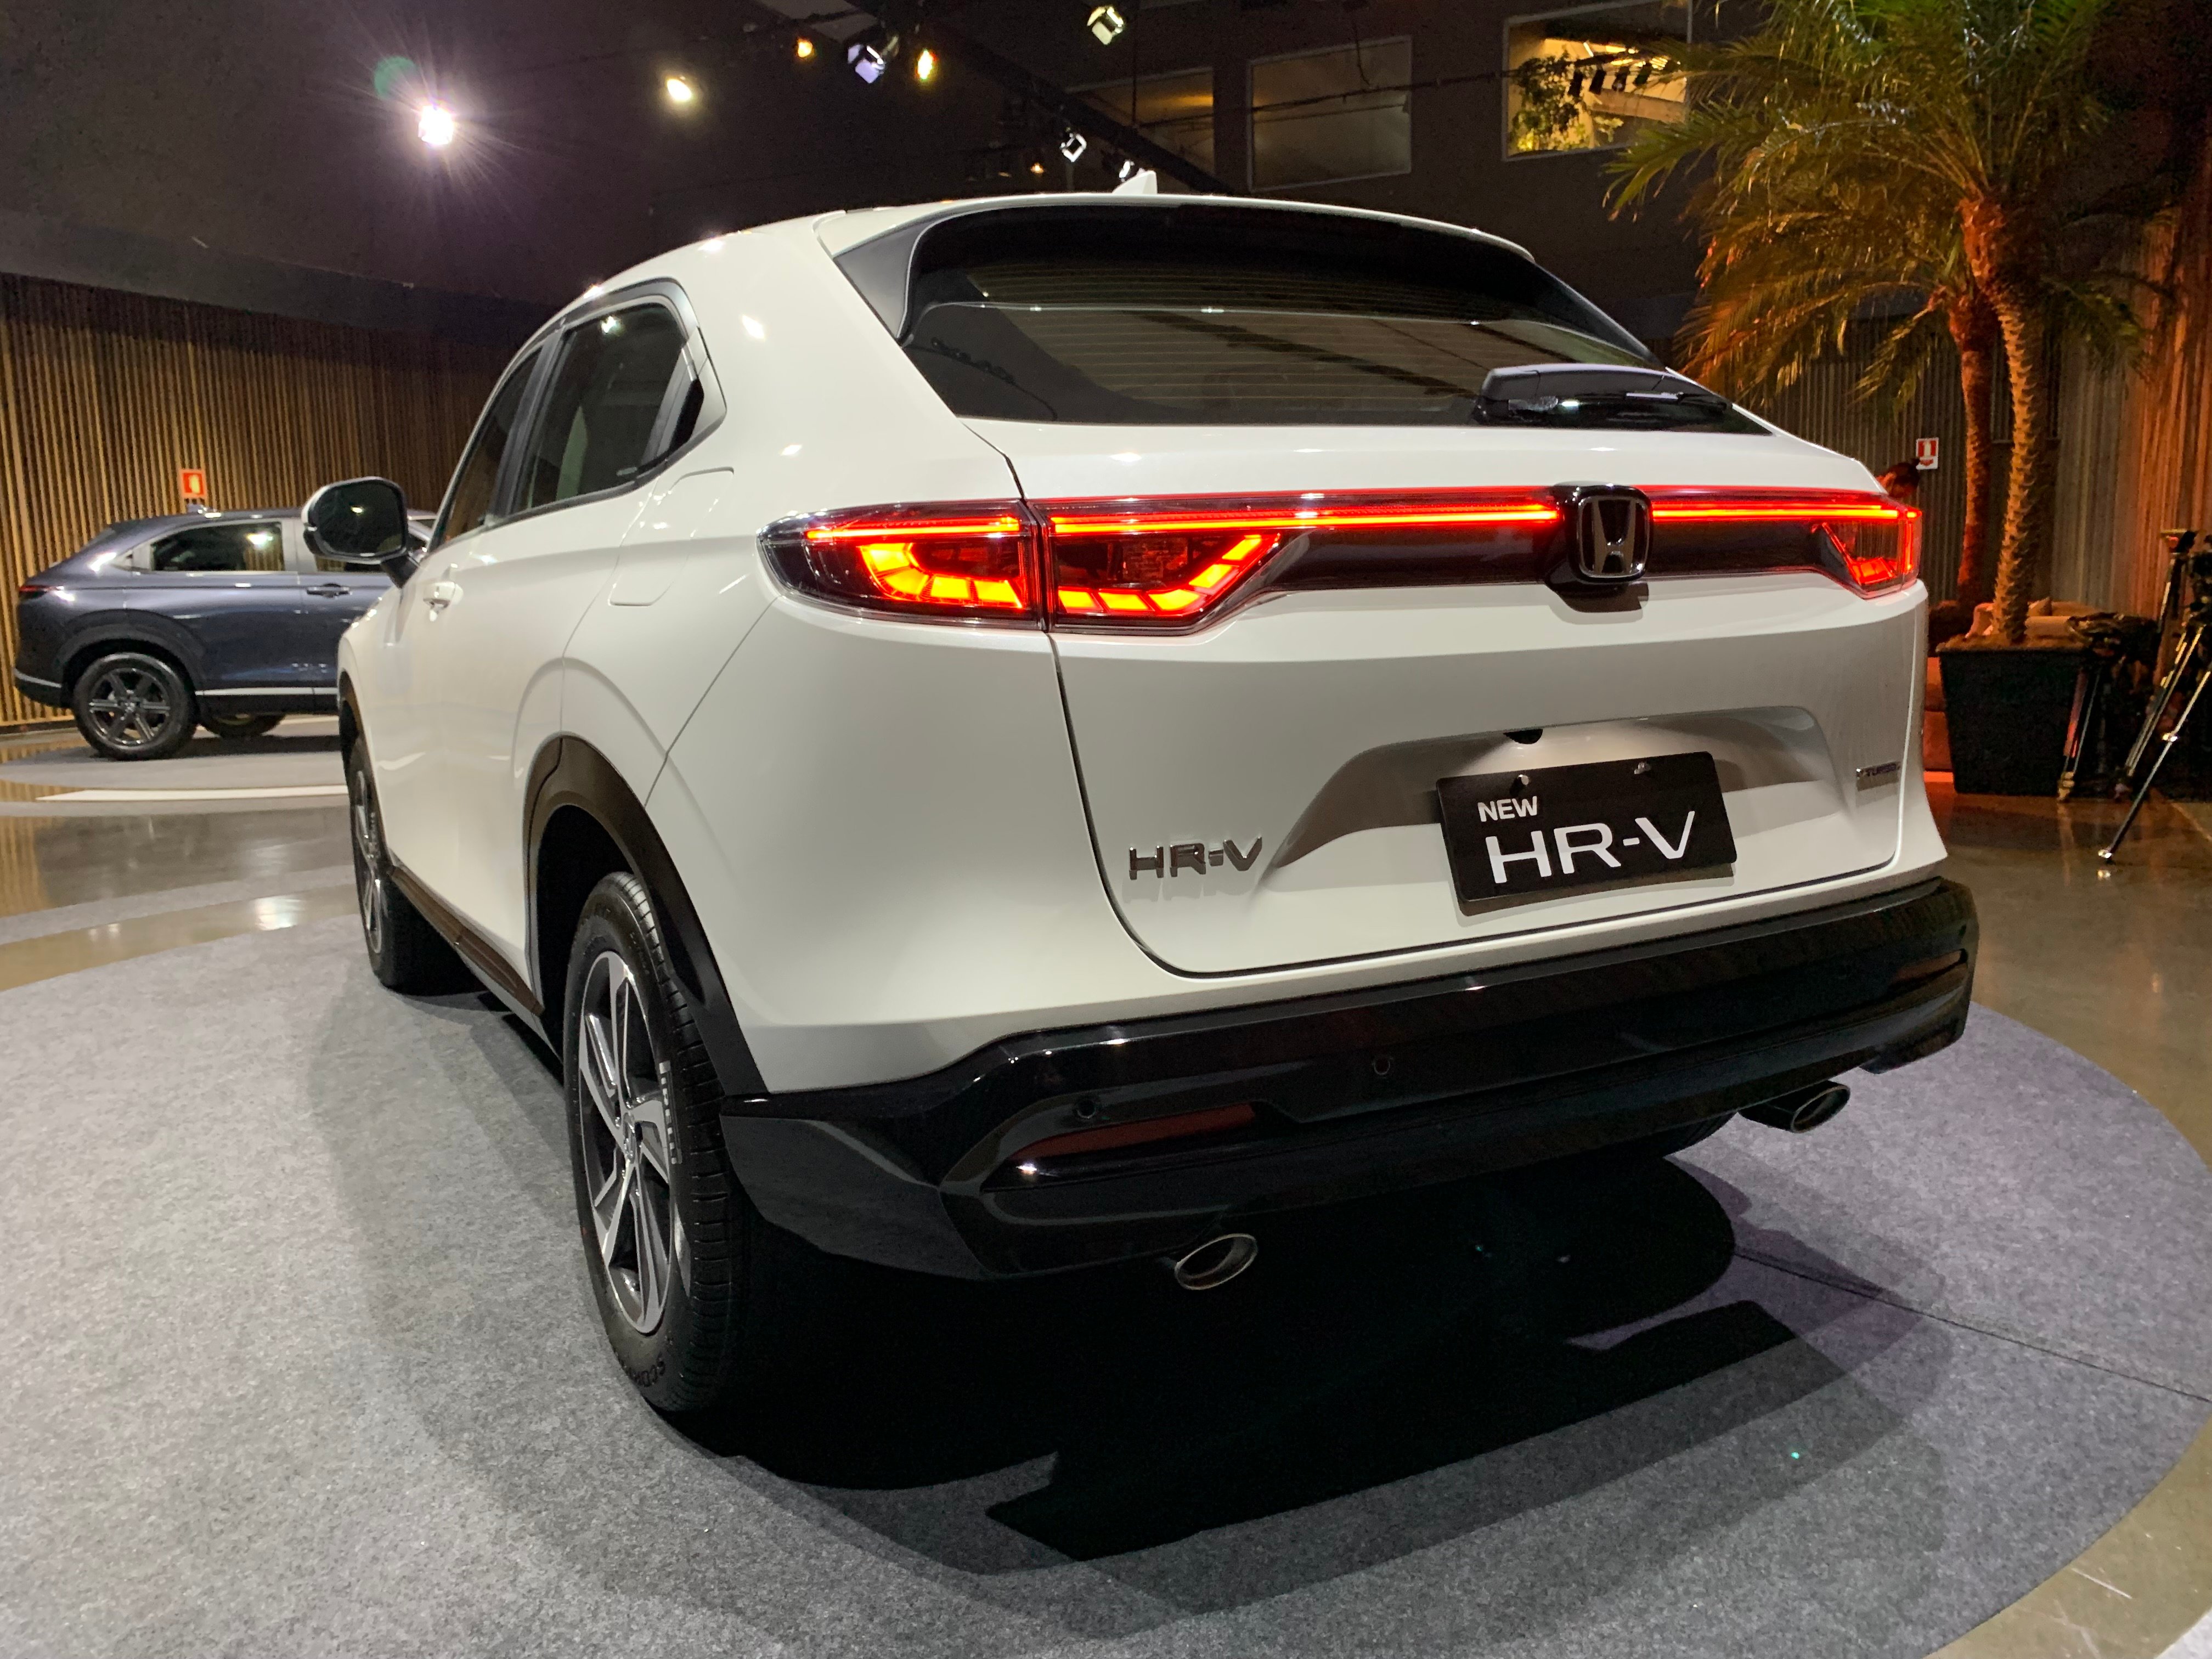 Lançamento do Novo Honda HR-V. Foto: Guilherme Menezes/ iG Carros